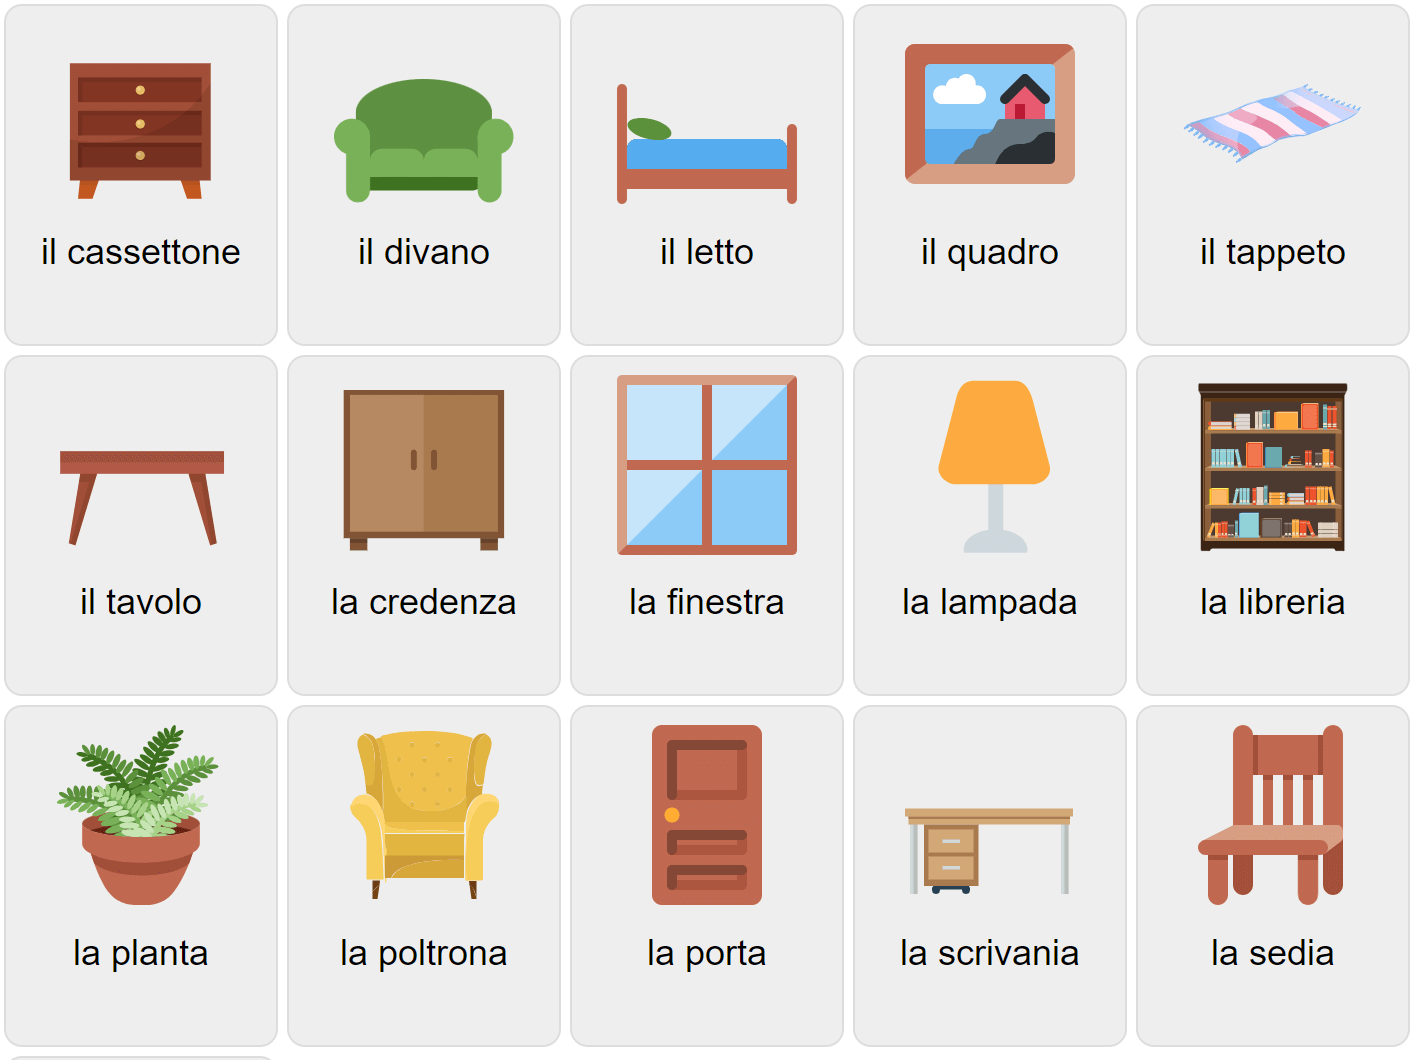 Furniture in Italian